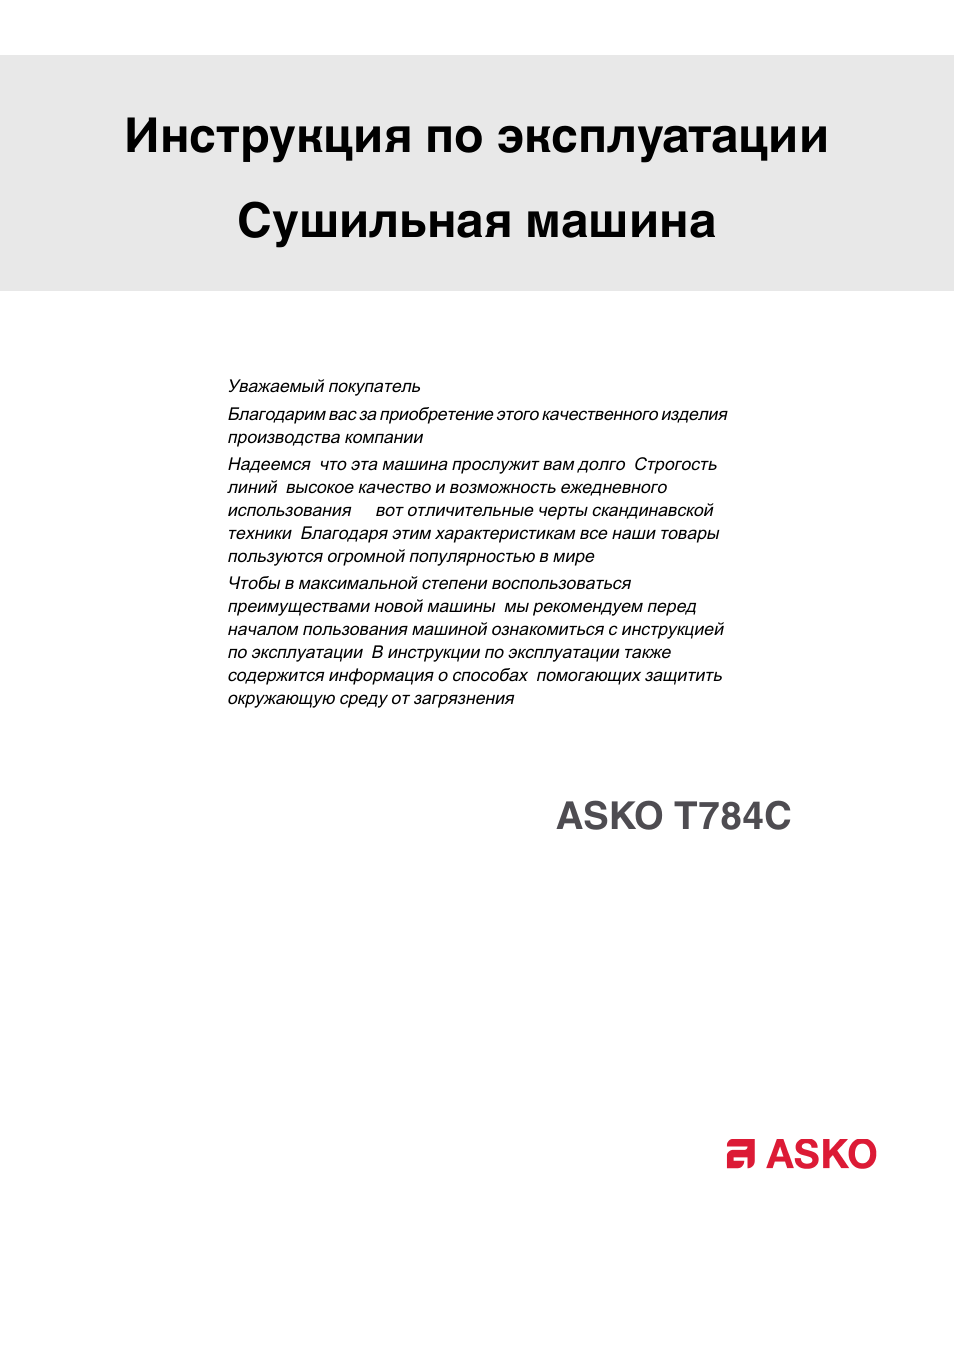 Инструкция по эксплуатации ASKO T784C | 32 страницы